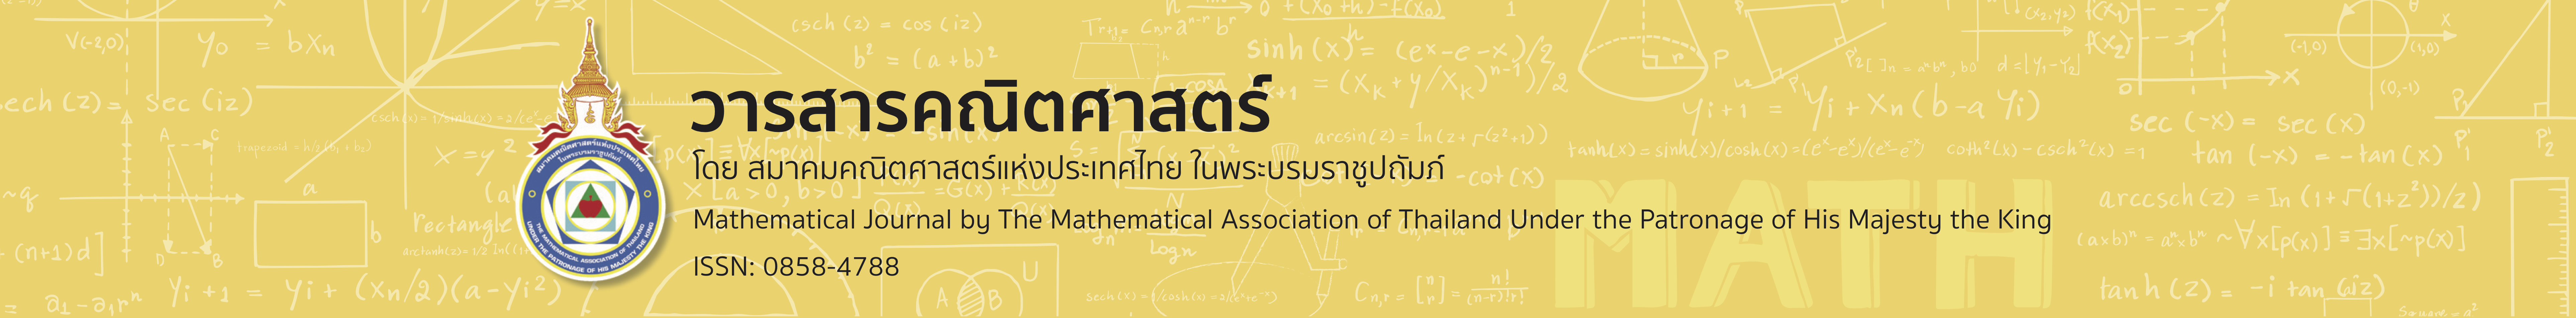 วารสารคณิตศาสตร์ โดยสมาคมคณิตศาสตร์แห่งประเทศไทย ในพระบรมราชูปถัมภ์